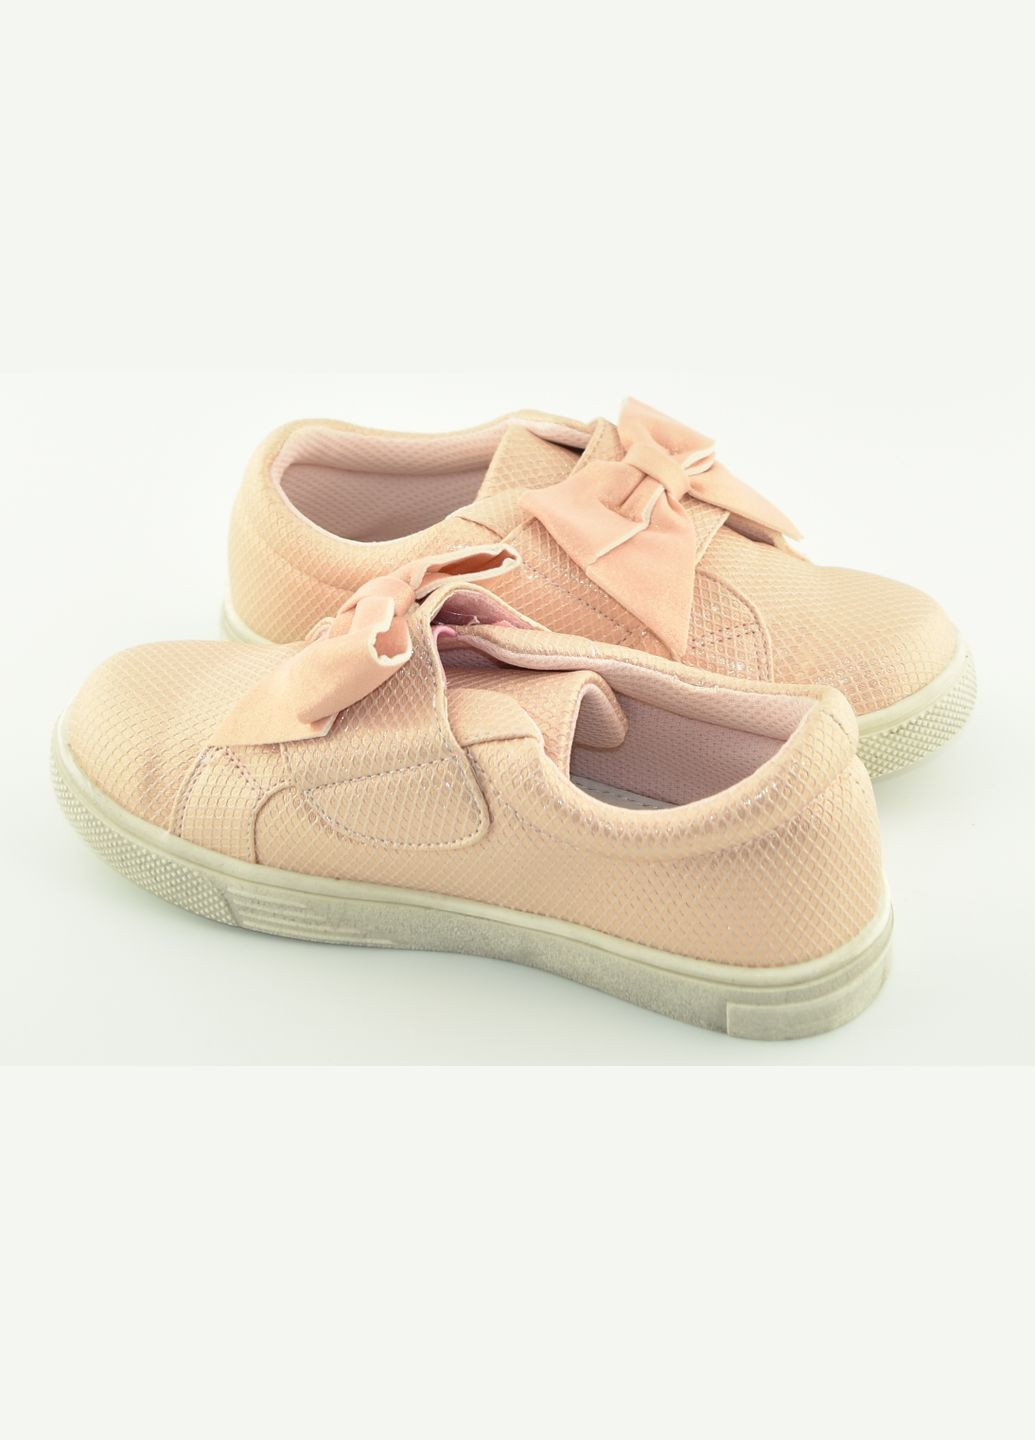 Цветные осенние ботинки p183 pink, 21,5 Clibee